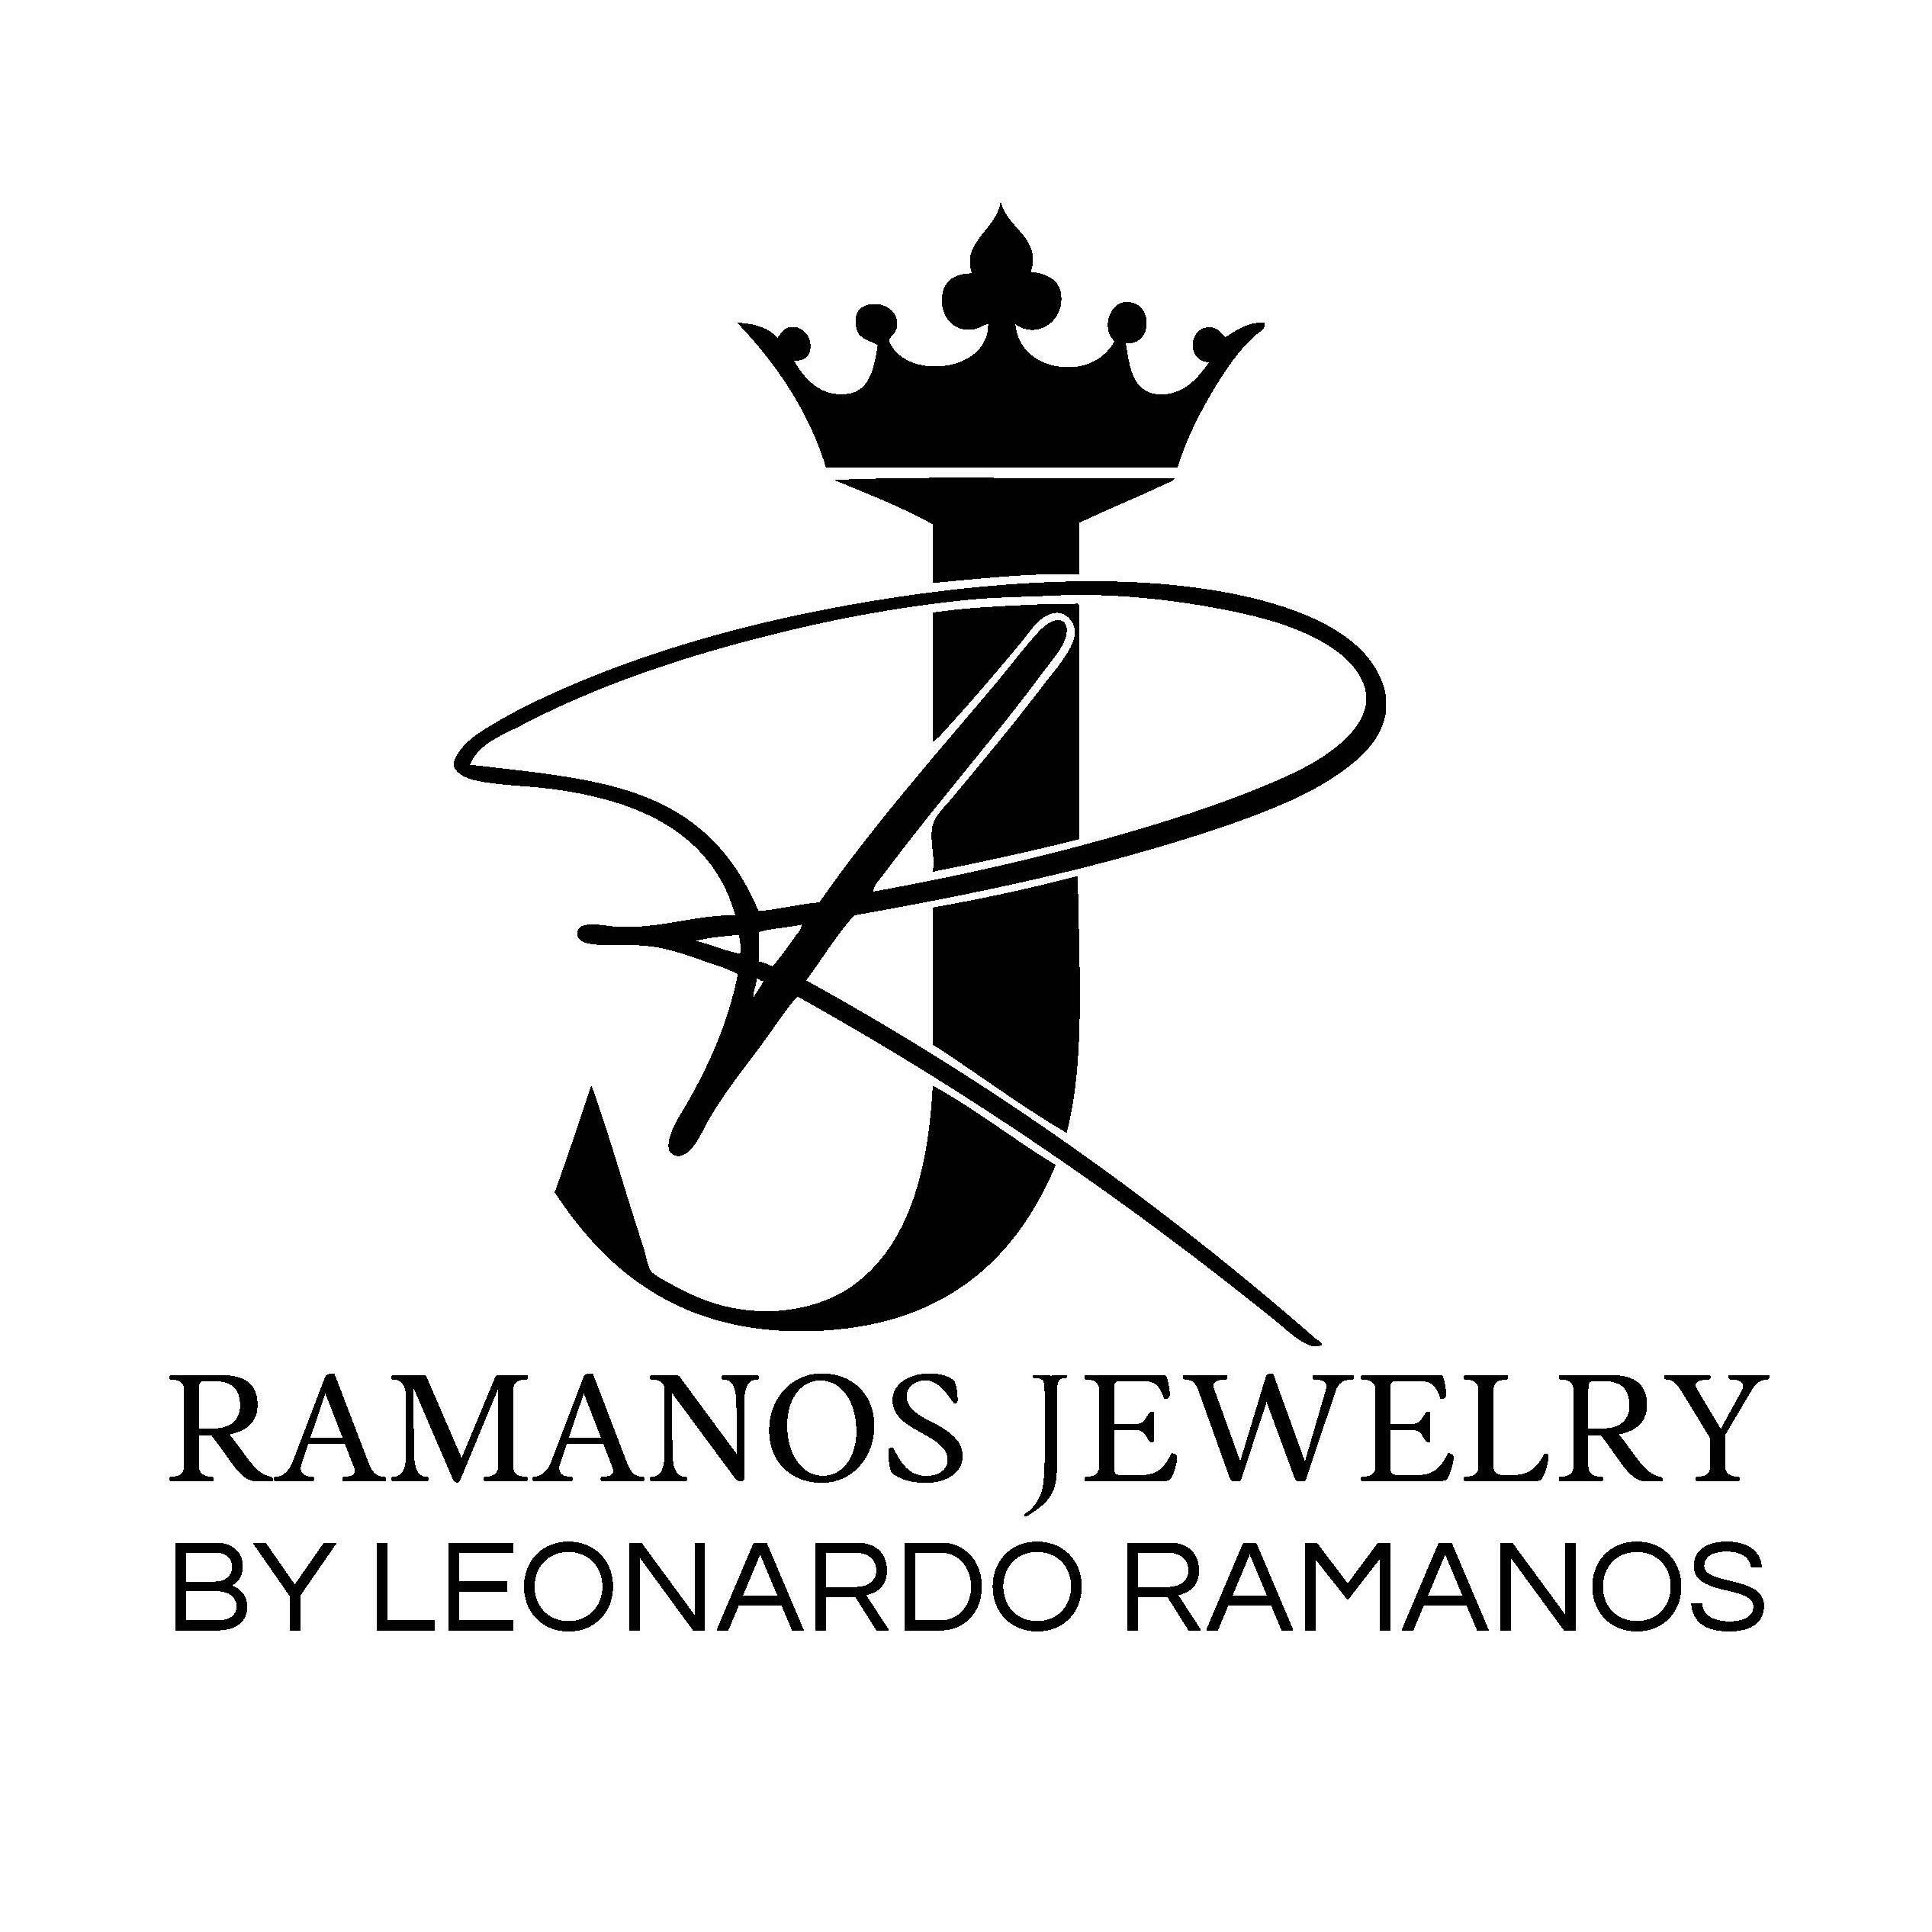 Ramanos Jewelry